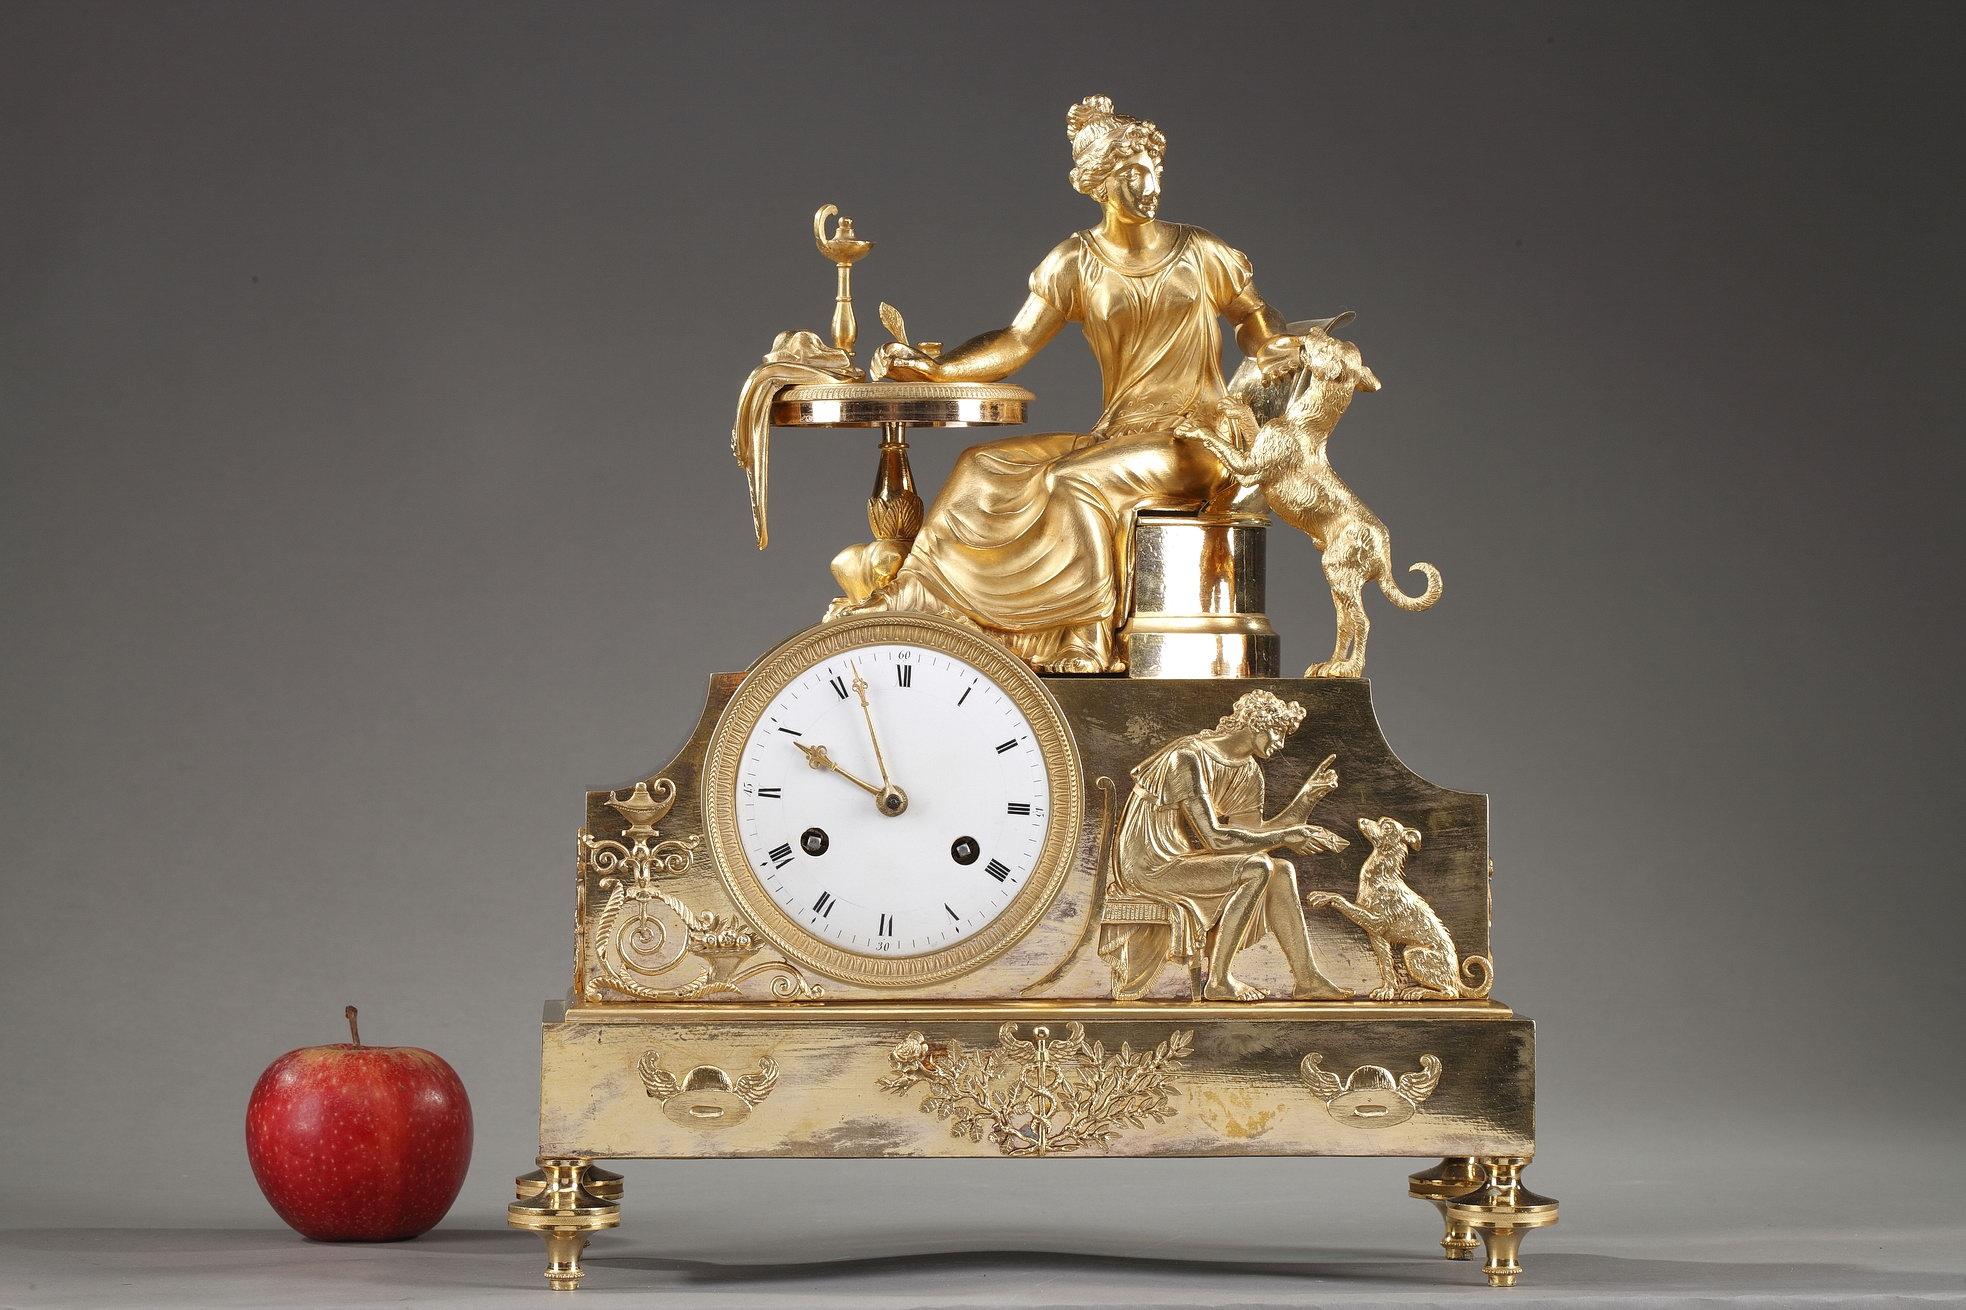 Empire-Uhr aus dem frühen 19. Jahrhundert aus vergoldeter Bronze oder Ormolu, mit einer allegorischen Szene, in der eine Frau an ihrem Arbeitstisch sitzt und mit ihrem Hund, dem Symbol der Treue, spielt. Die Gruppe befindet sich über einem erhöhten